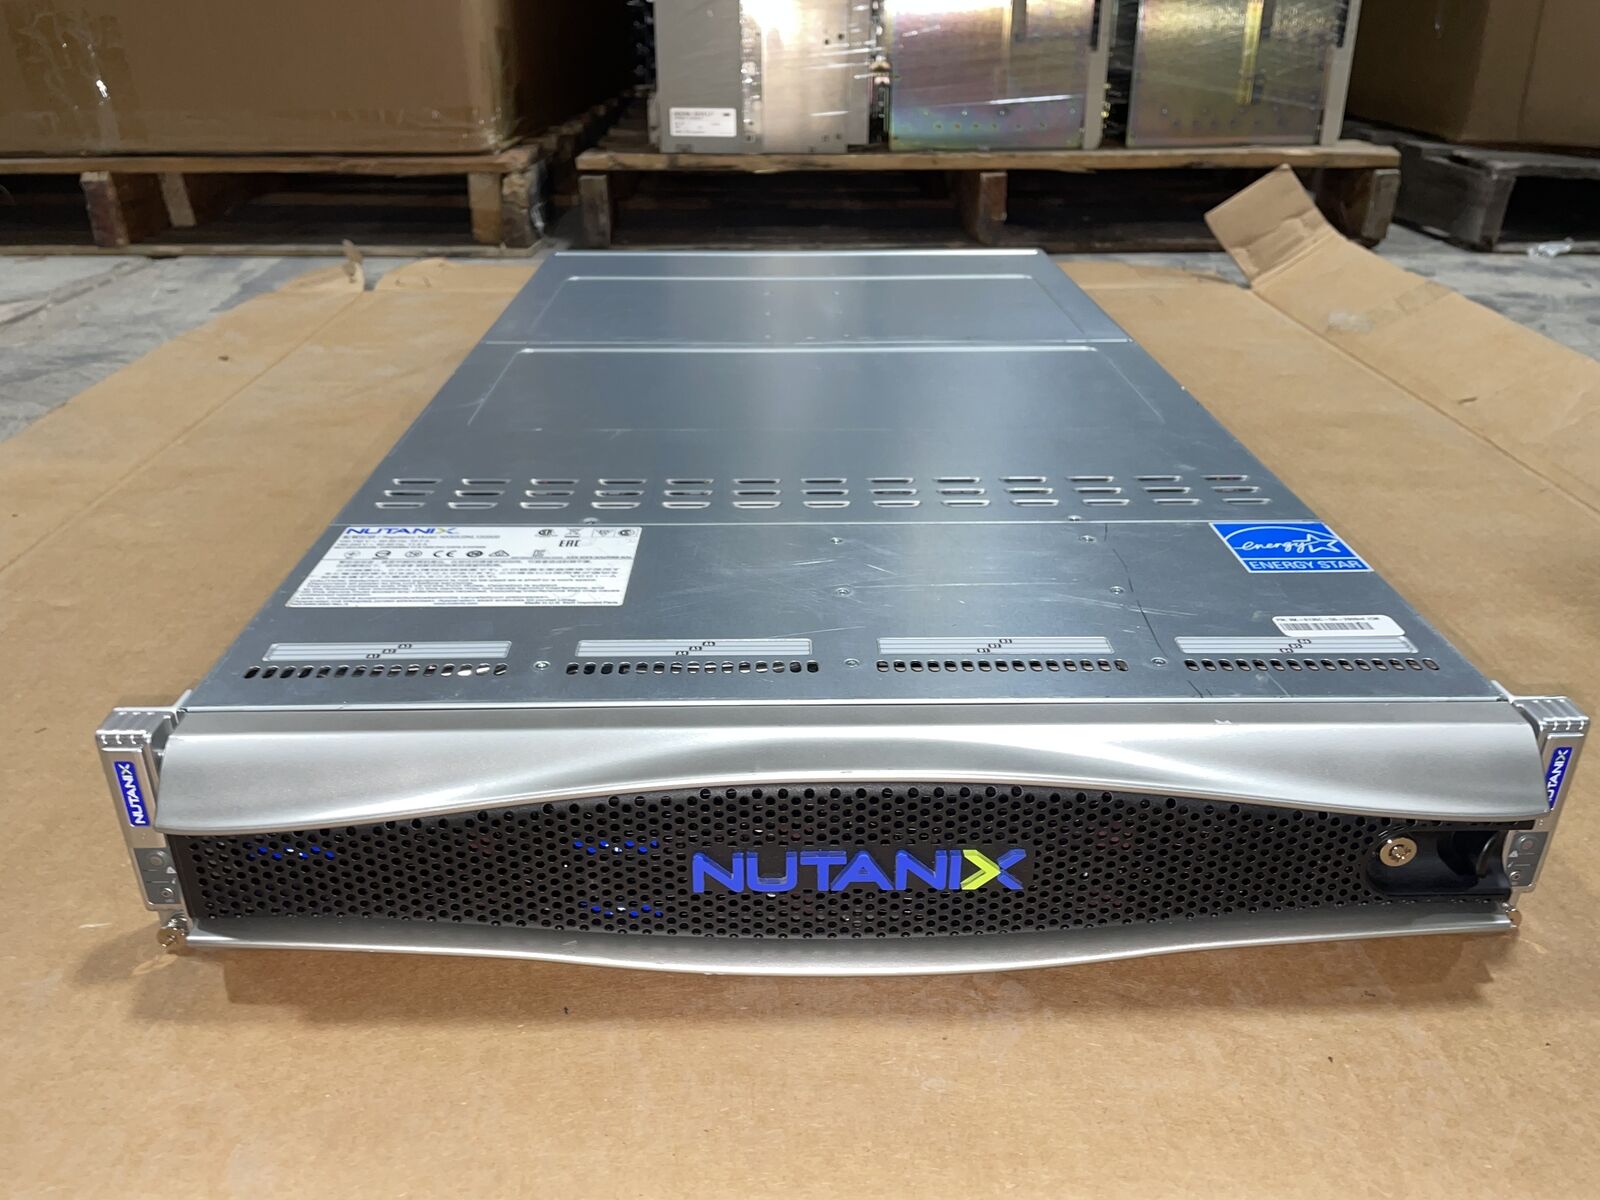 NUTANIX NX-6135C-G5-2609v4-CM w/ 1 NODE,4x 8TB HDD, 1x 2609v4 CPU, 32 GB RAM